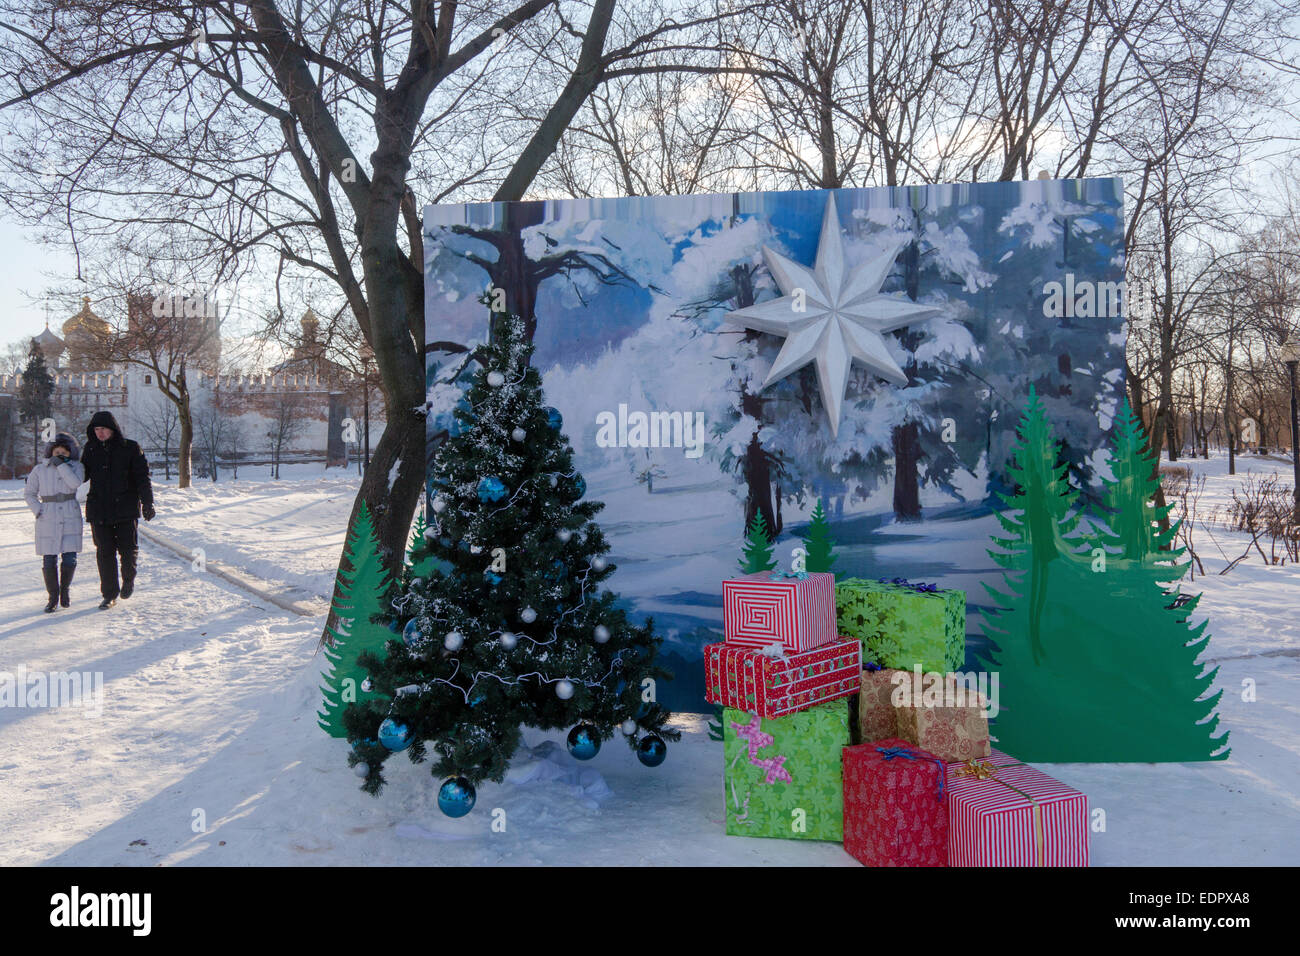 Quando E Il Natale Ortodosso.Natale Ortodosso Immagini E Fotos Stock Alamy